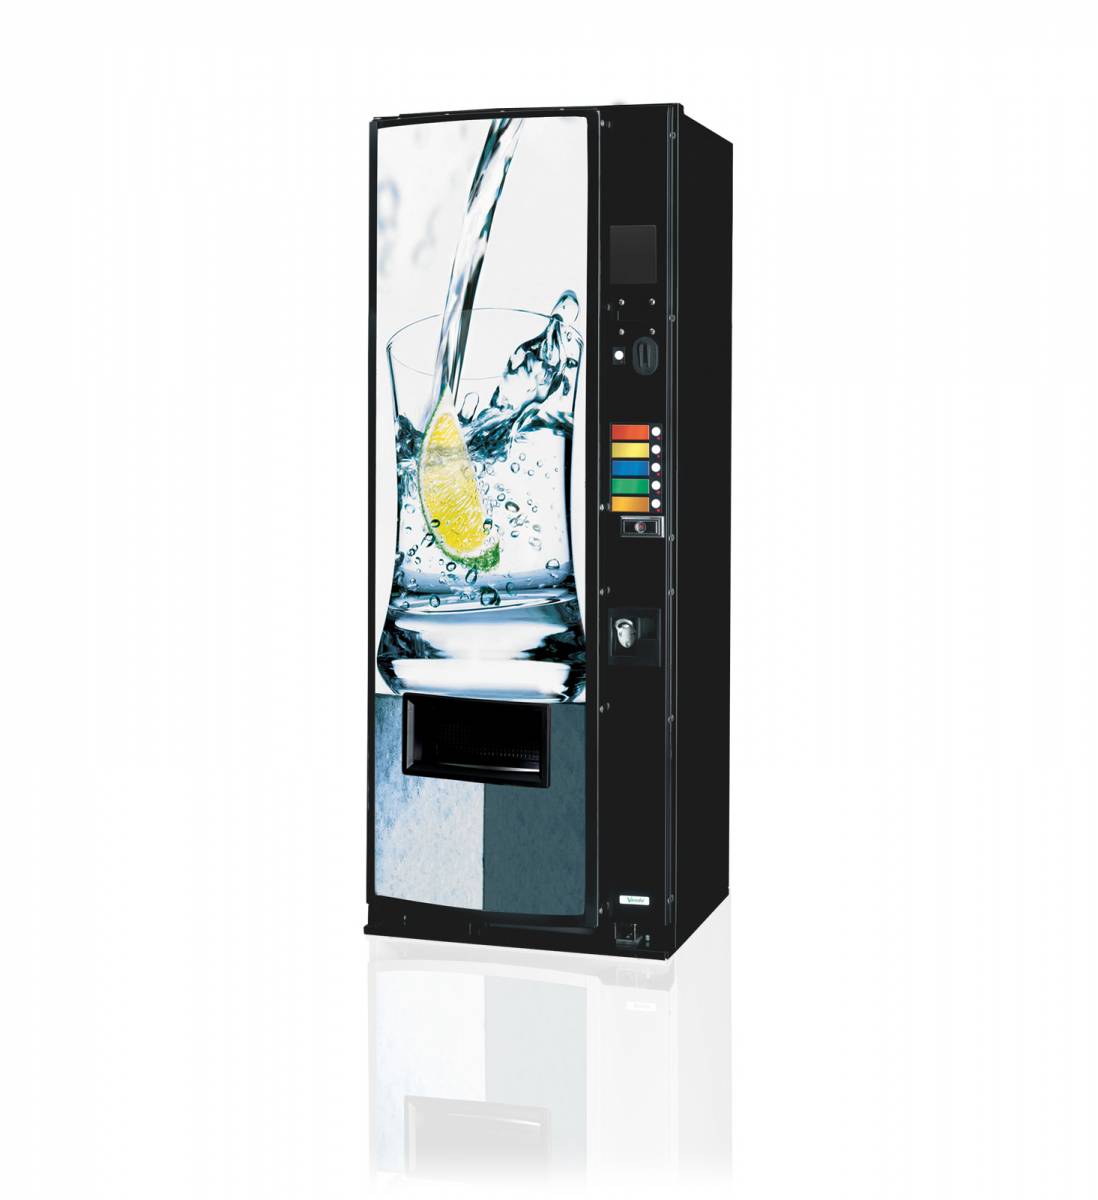 Distributeur de boissons fraîches à grosse capacité avec votre partenaire  DAV83 - Vente et location de distributeurs automatiques et fontaines à eau  - Distribution Automatique Varoise